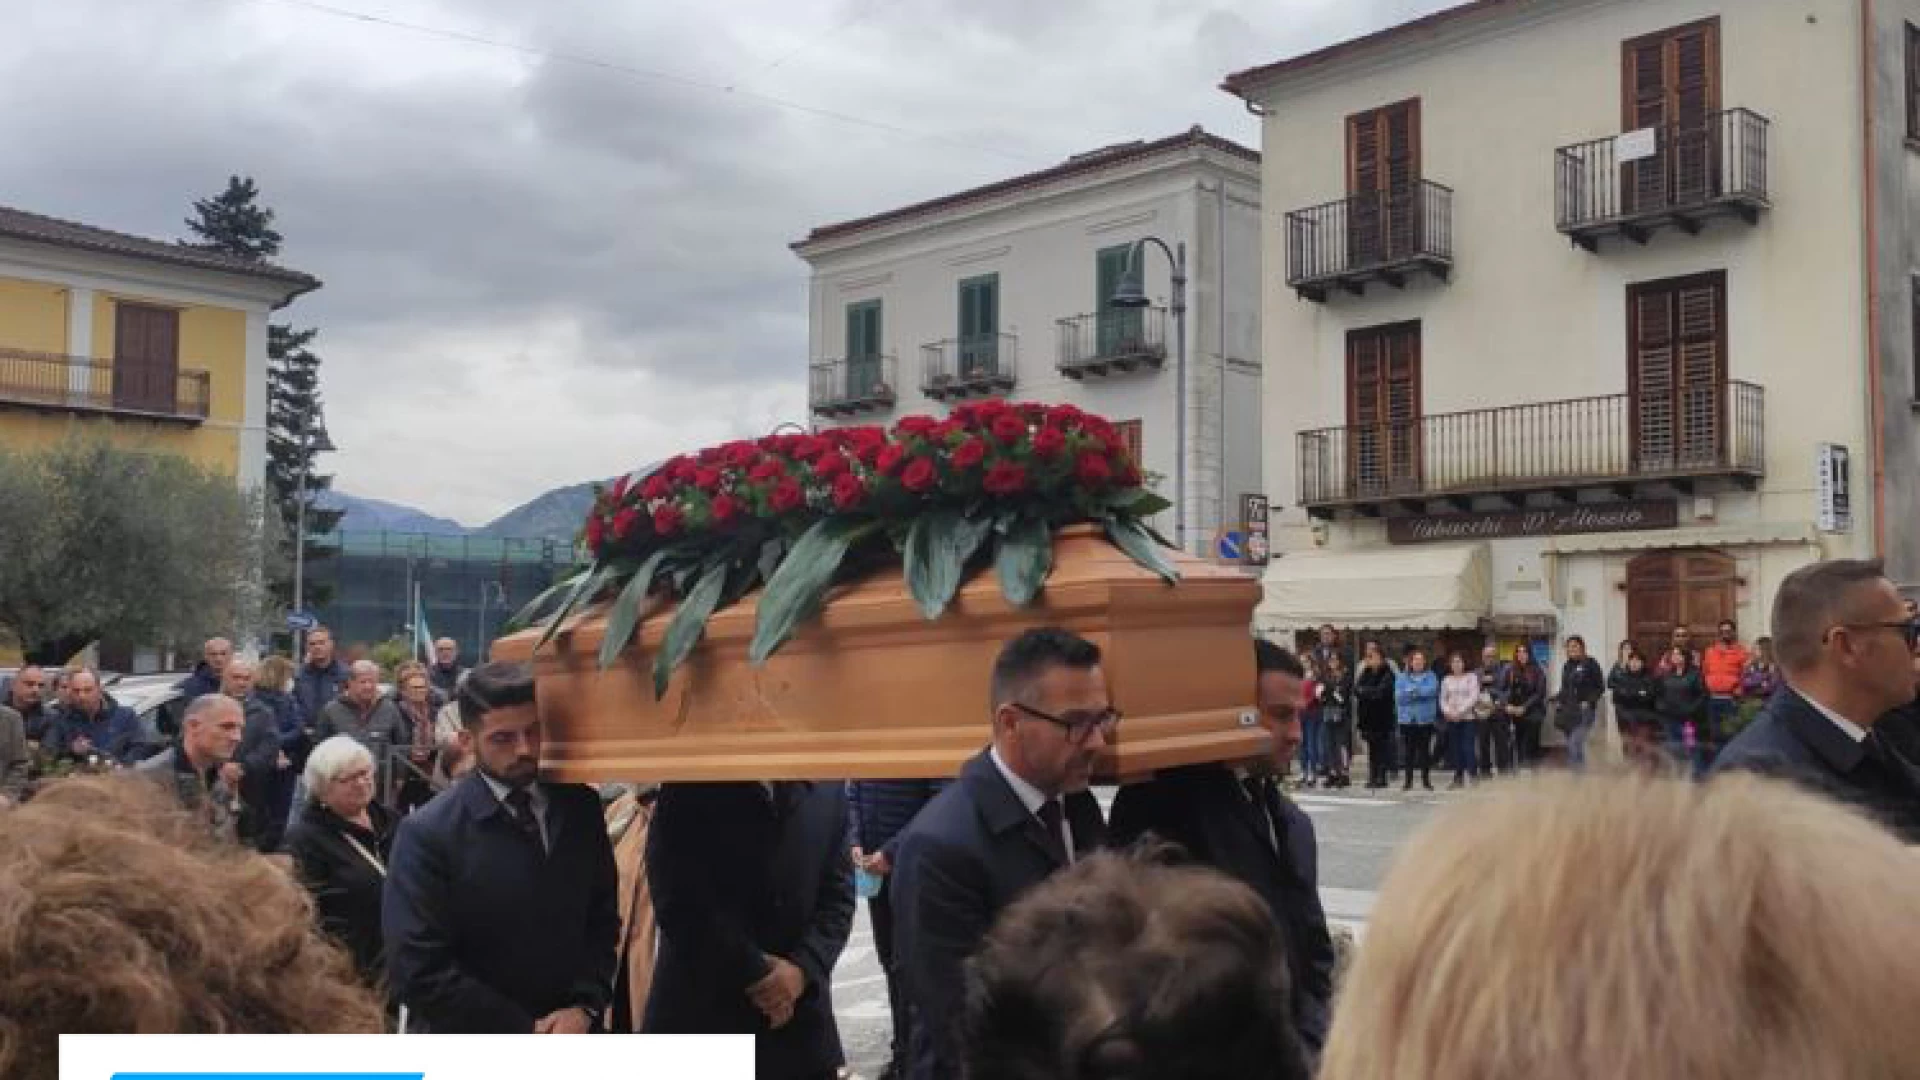 Colli a Volturno saluta Paolo Marchesani. Questa mattina i funerali dell’uomo investito mortalmente sulla statale 158 “Valle del Volturno”.